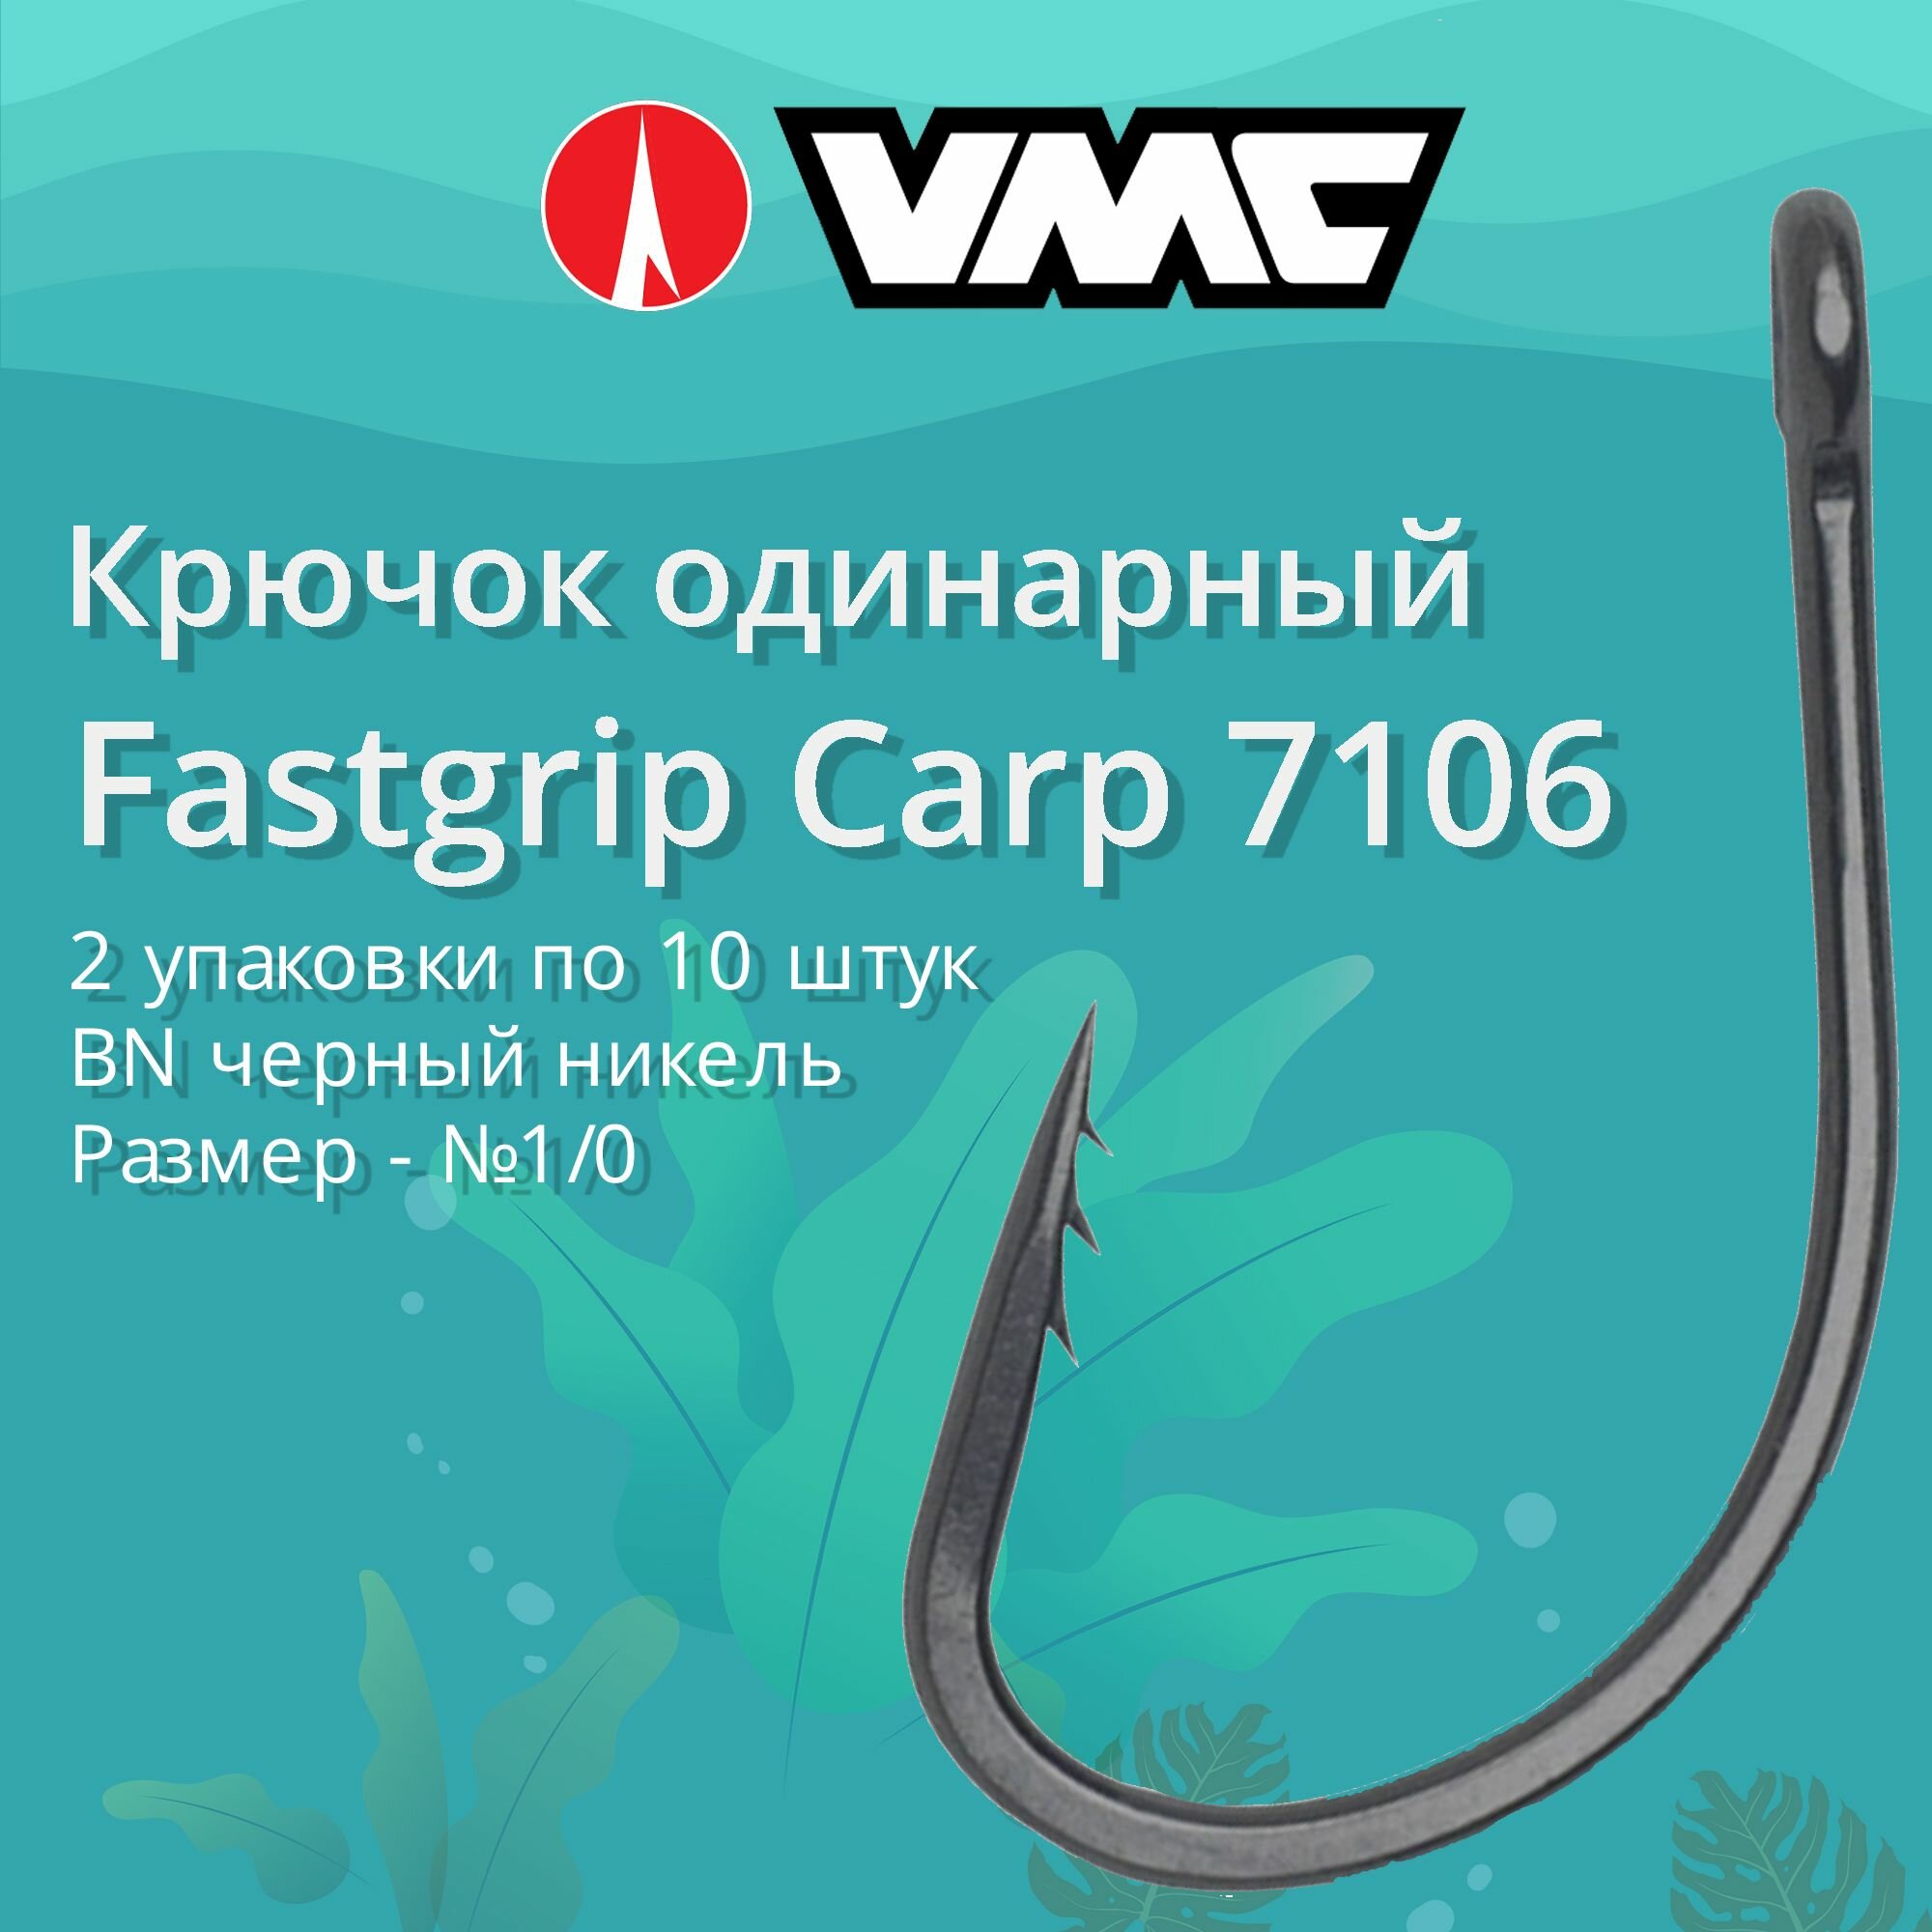 Крючки для рыбалки (одинарный) VMC Fastgrip Carp 7106 BN (черн. никель) №1/0 2 упаковки по 10 штук